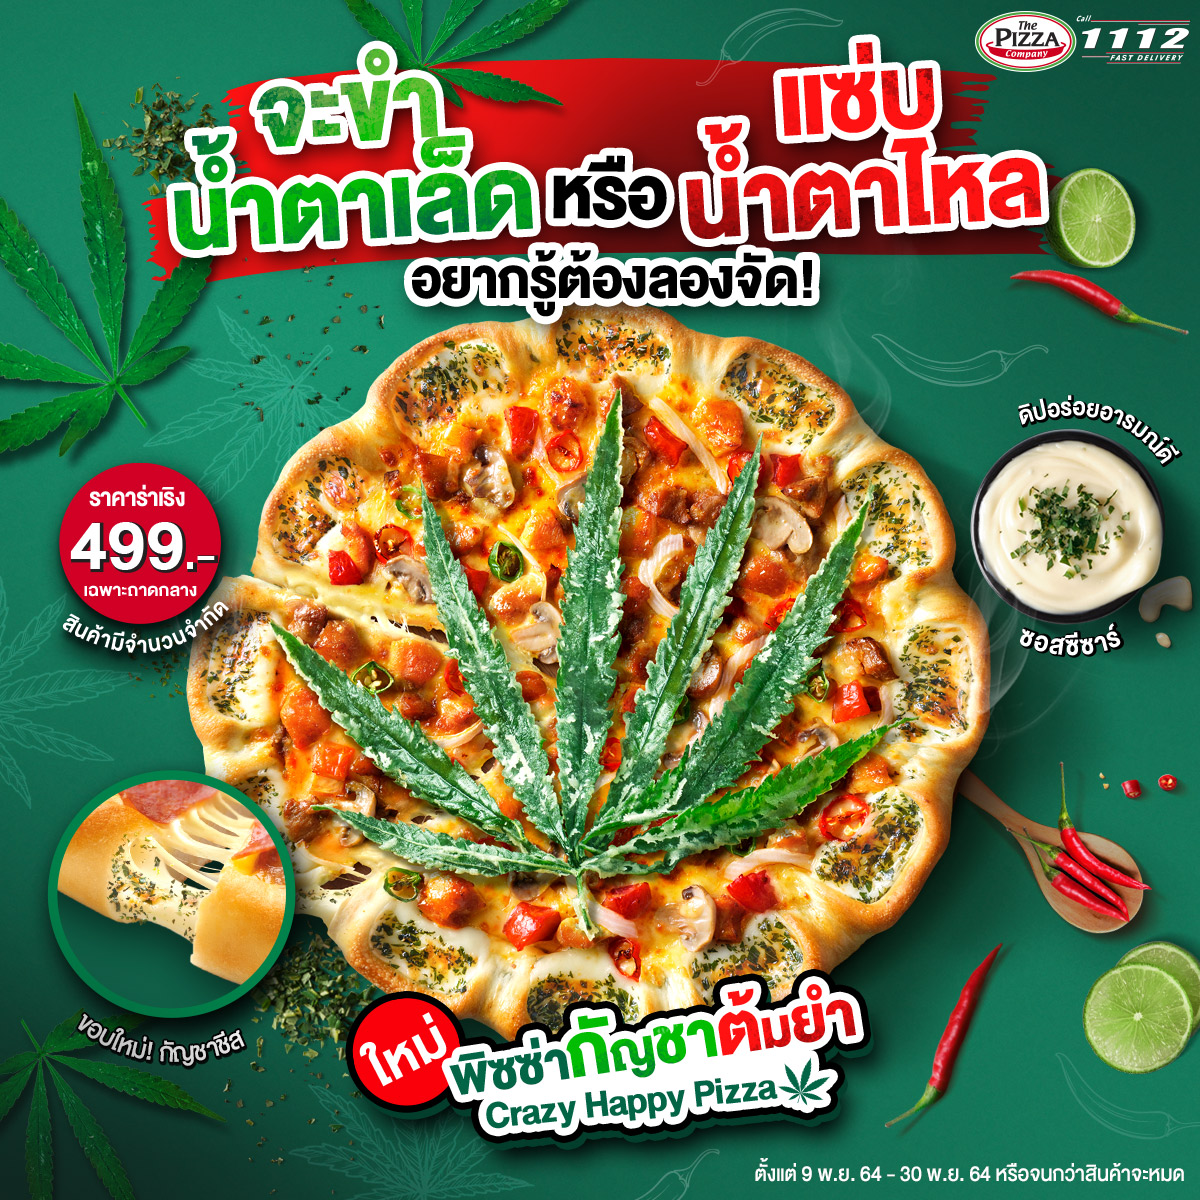 タイの大手ピザチェーン店が大麻入り「クレイジーハッピーピザ」発売中、11月30日まで